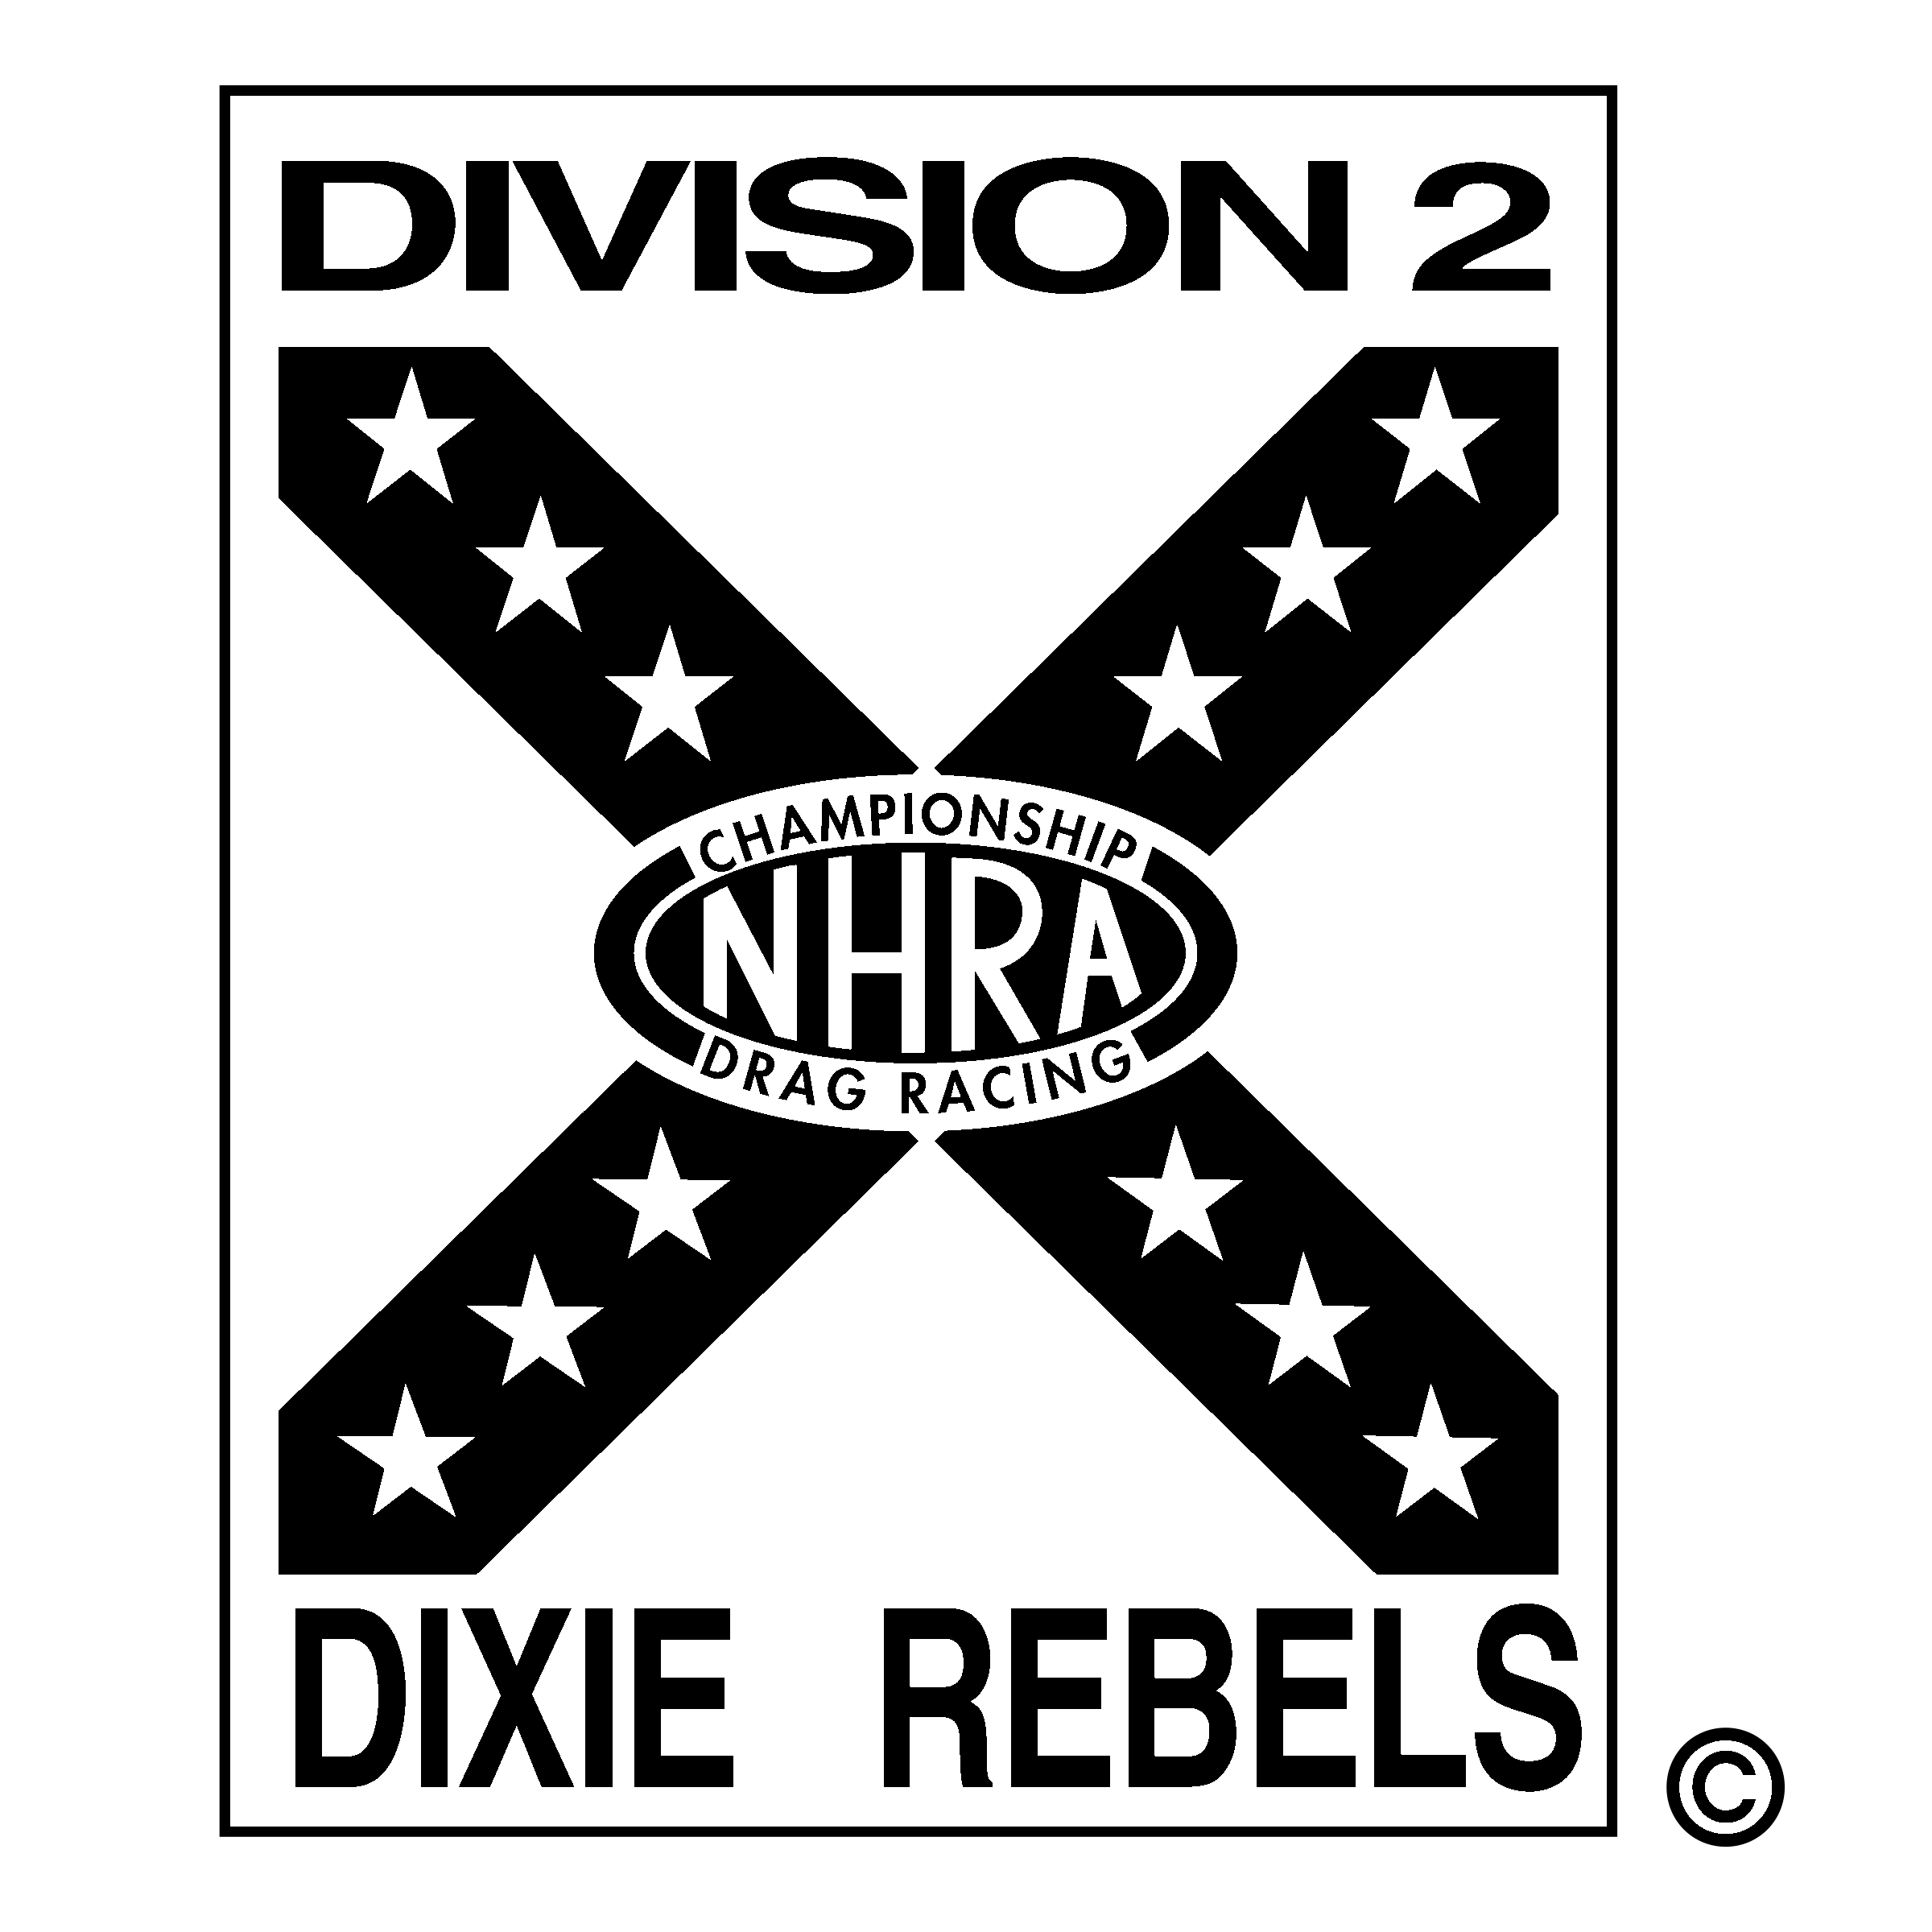 Black White Rebels Logo - Division 2 Dixie Rebels Logo PNG Transparent & SVG Vector